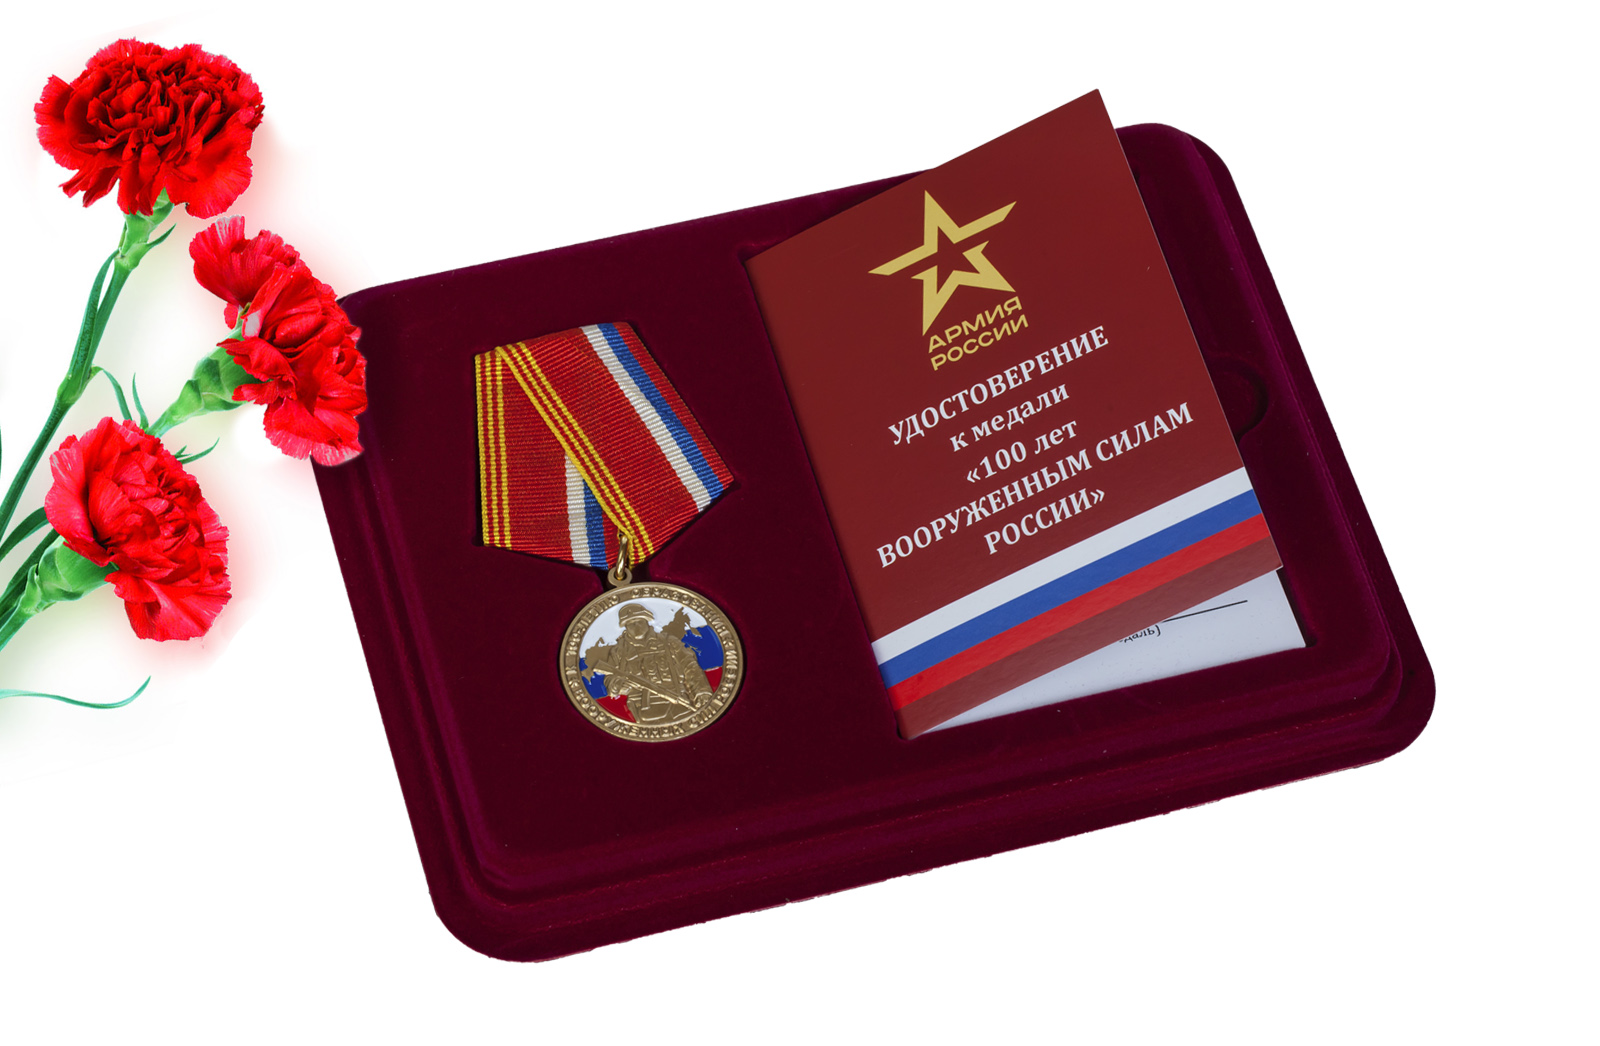 Купить юбилейная медаль к 100-летию образования Вооруженных сил России оптом